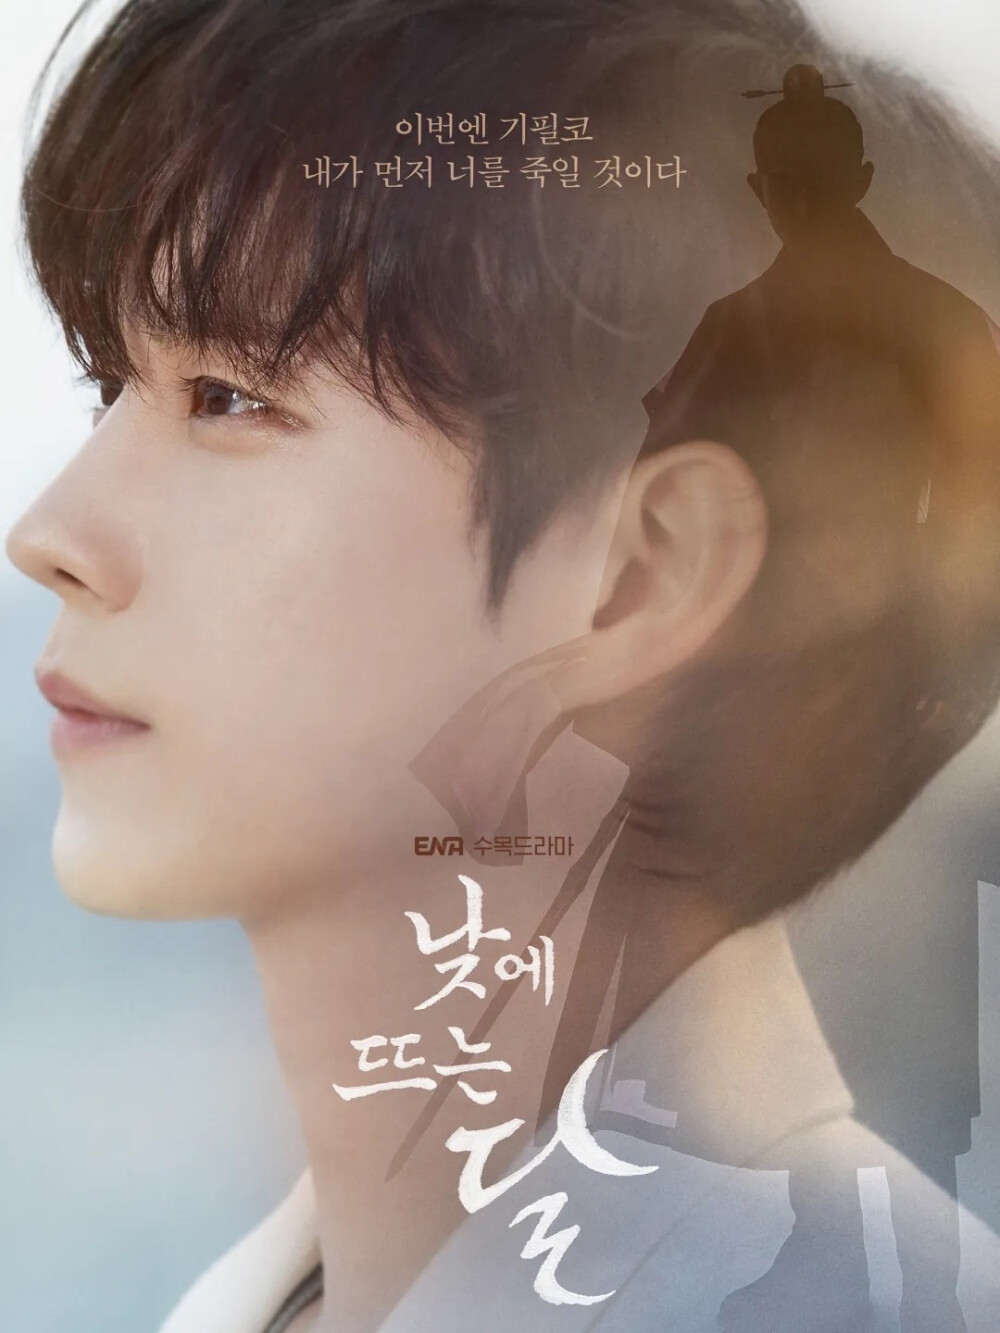 近期看完的第一部韩剧《白昼之月》 冲着金永大看完了